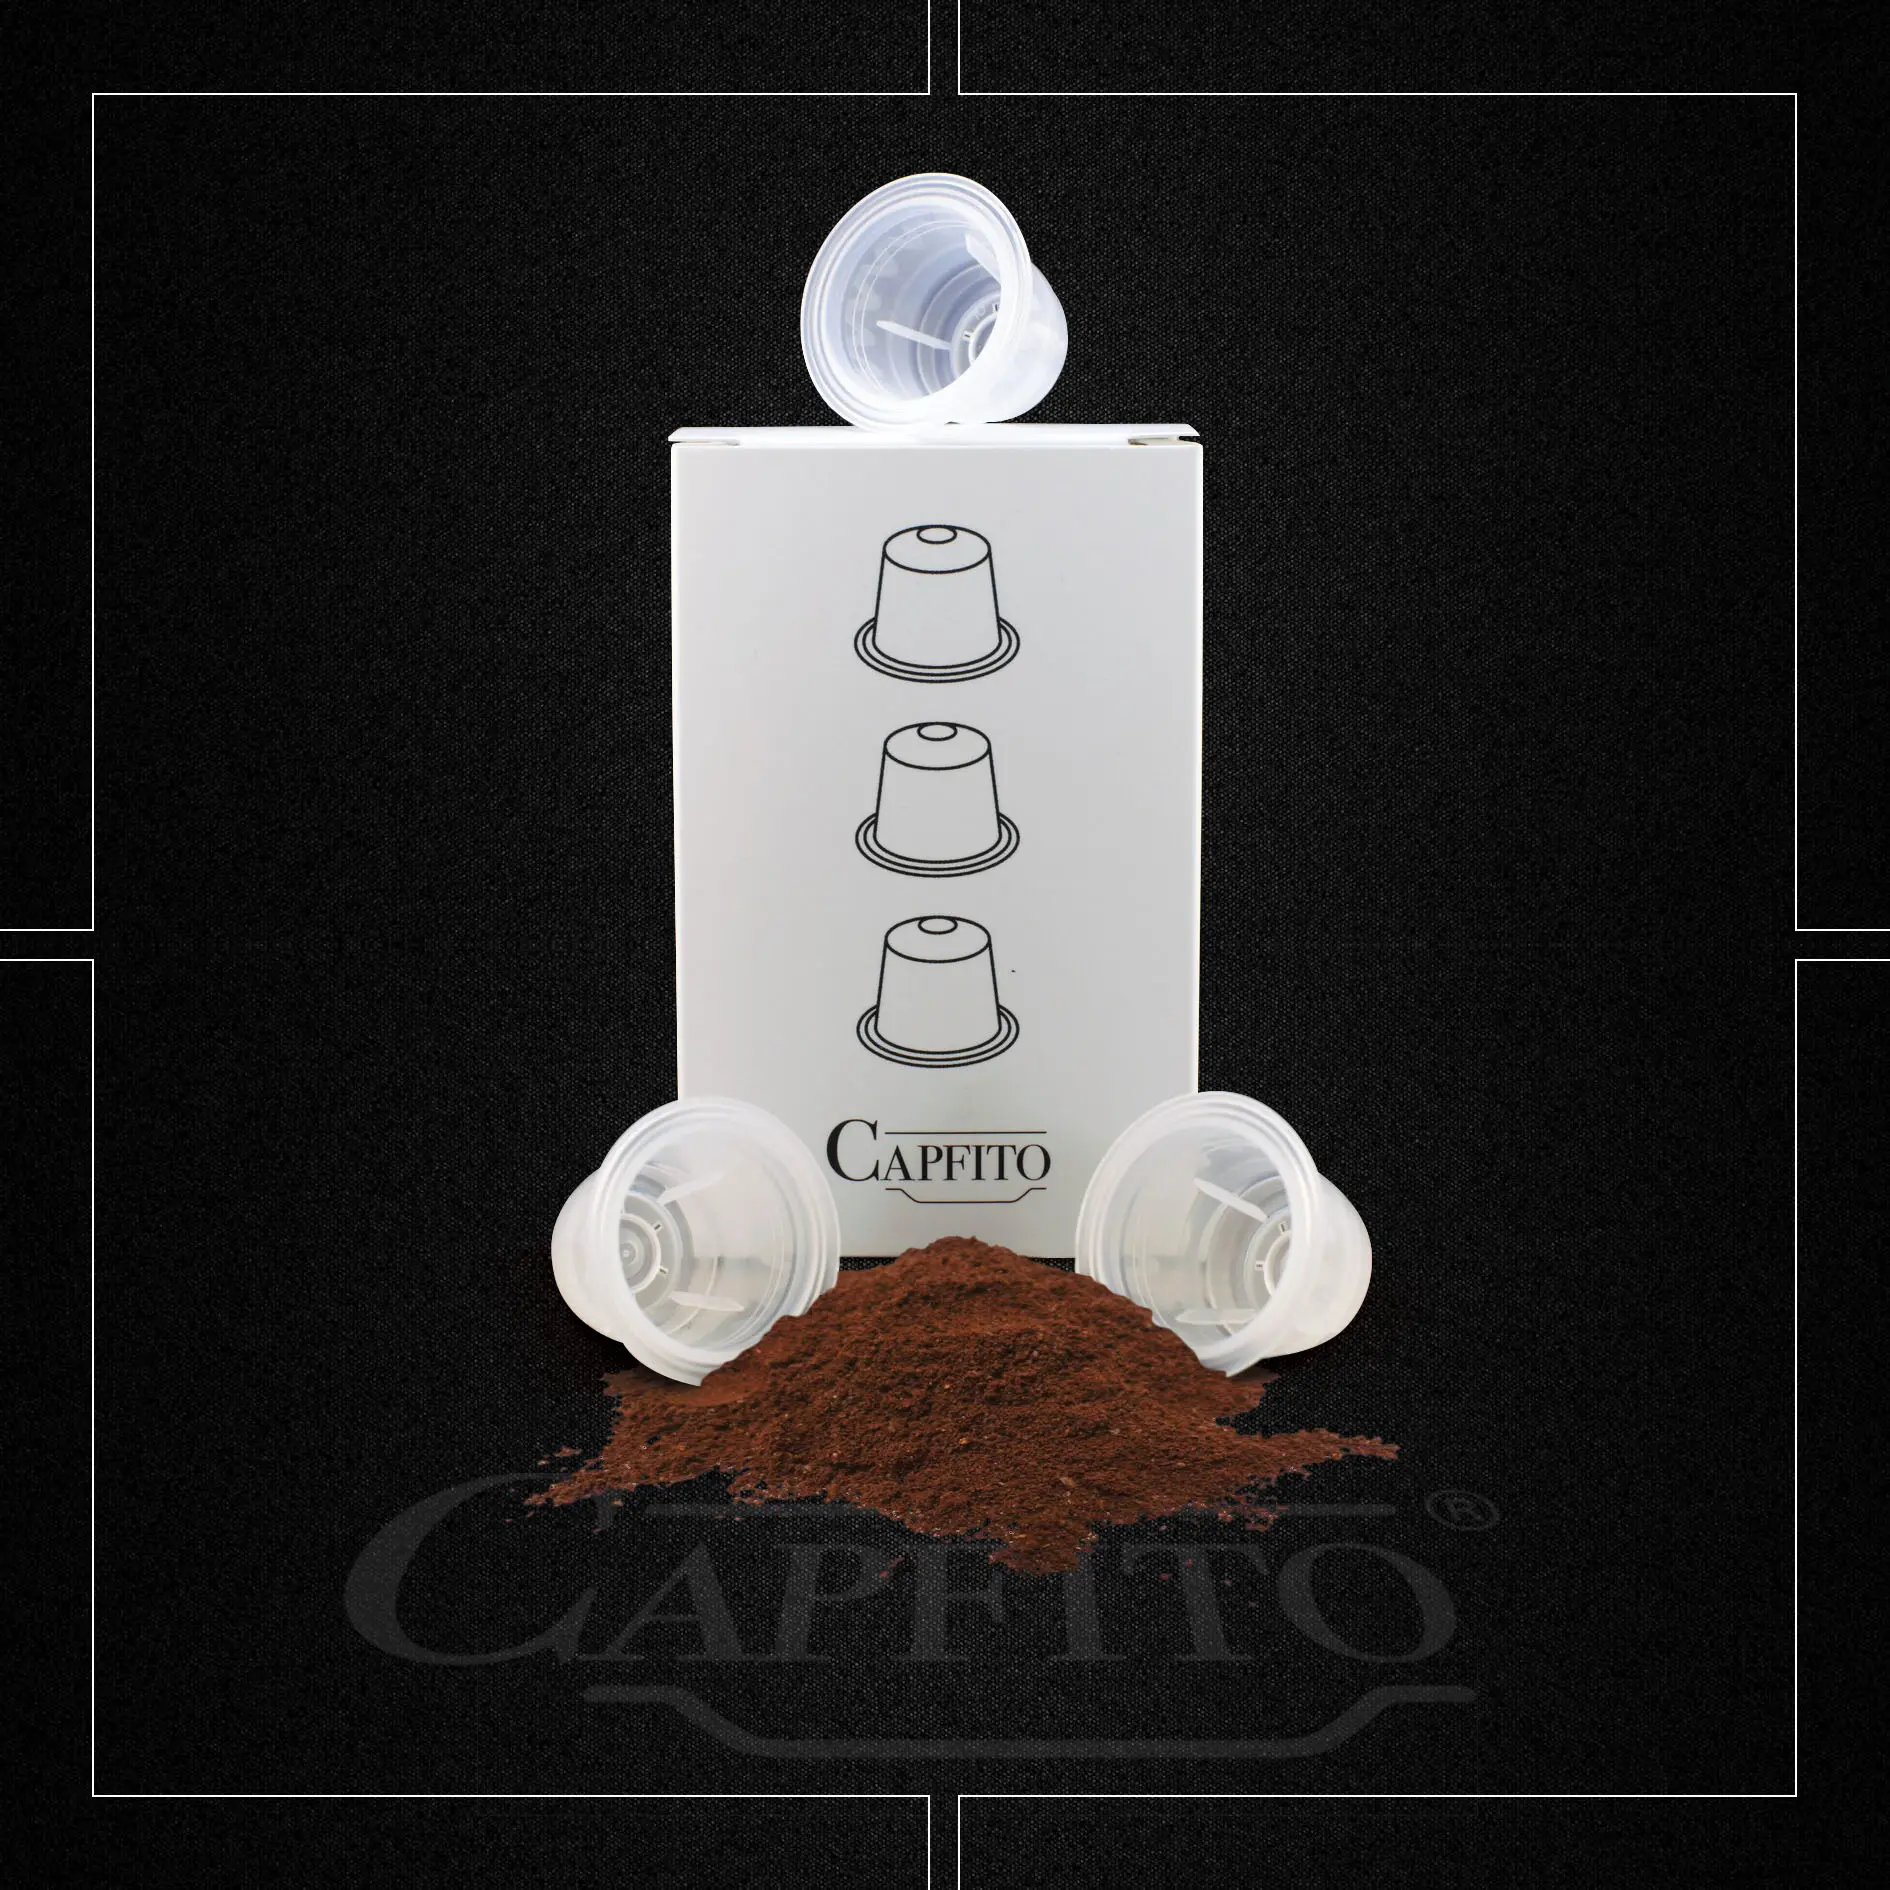 Home Capsule nespresso riutilizzabili - Capfito - Capsule